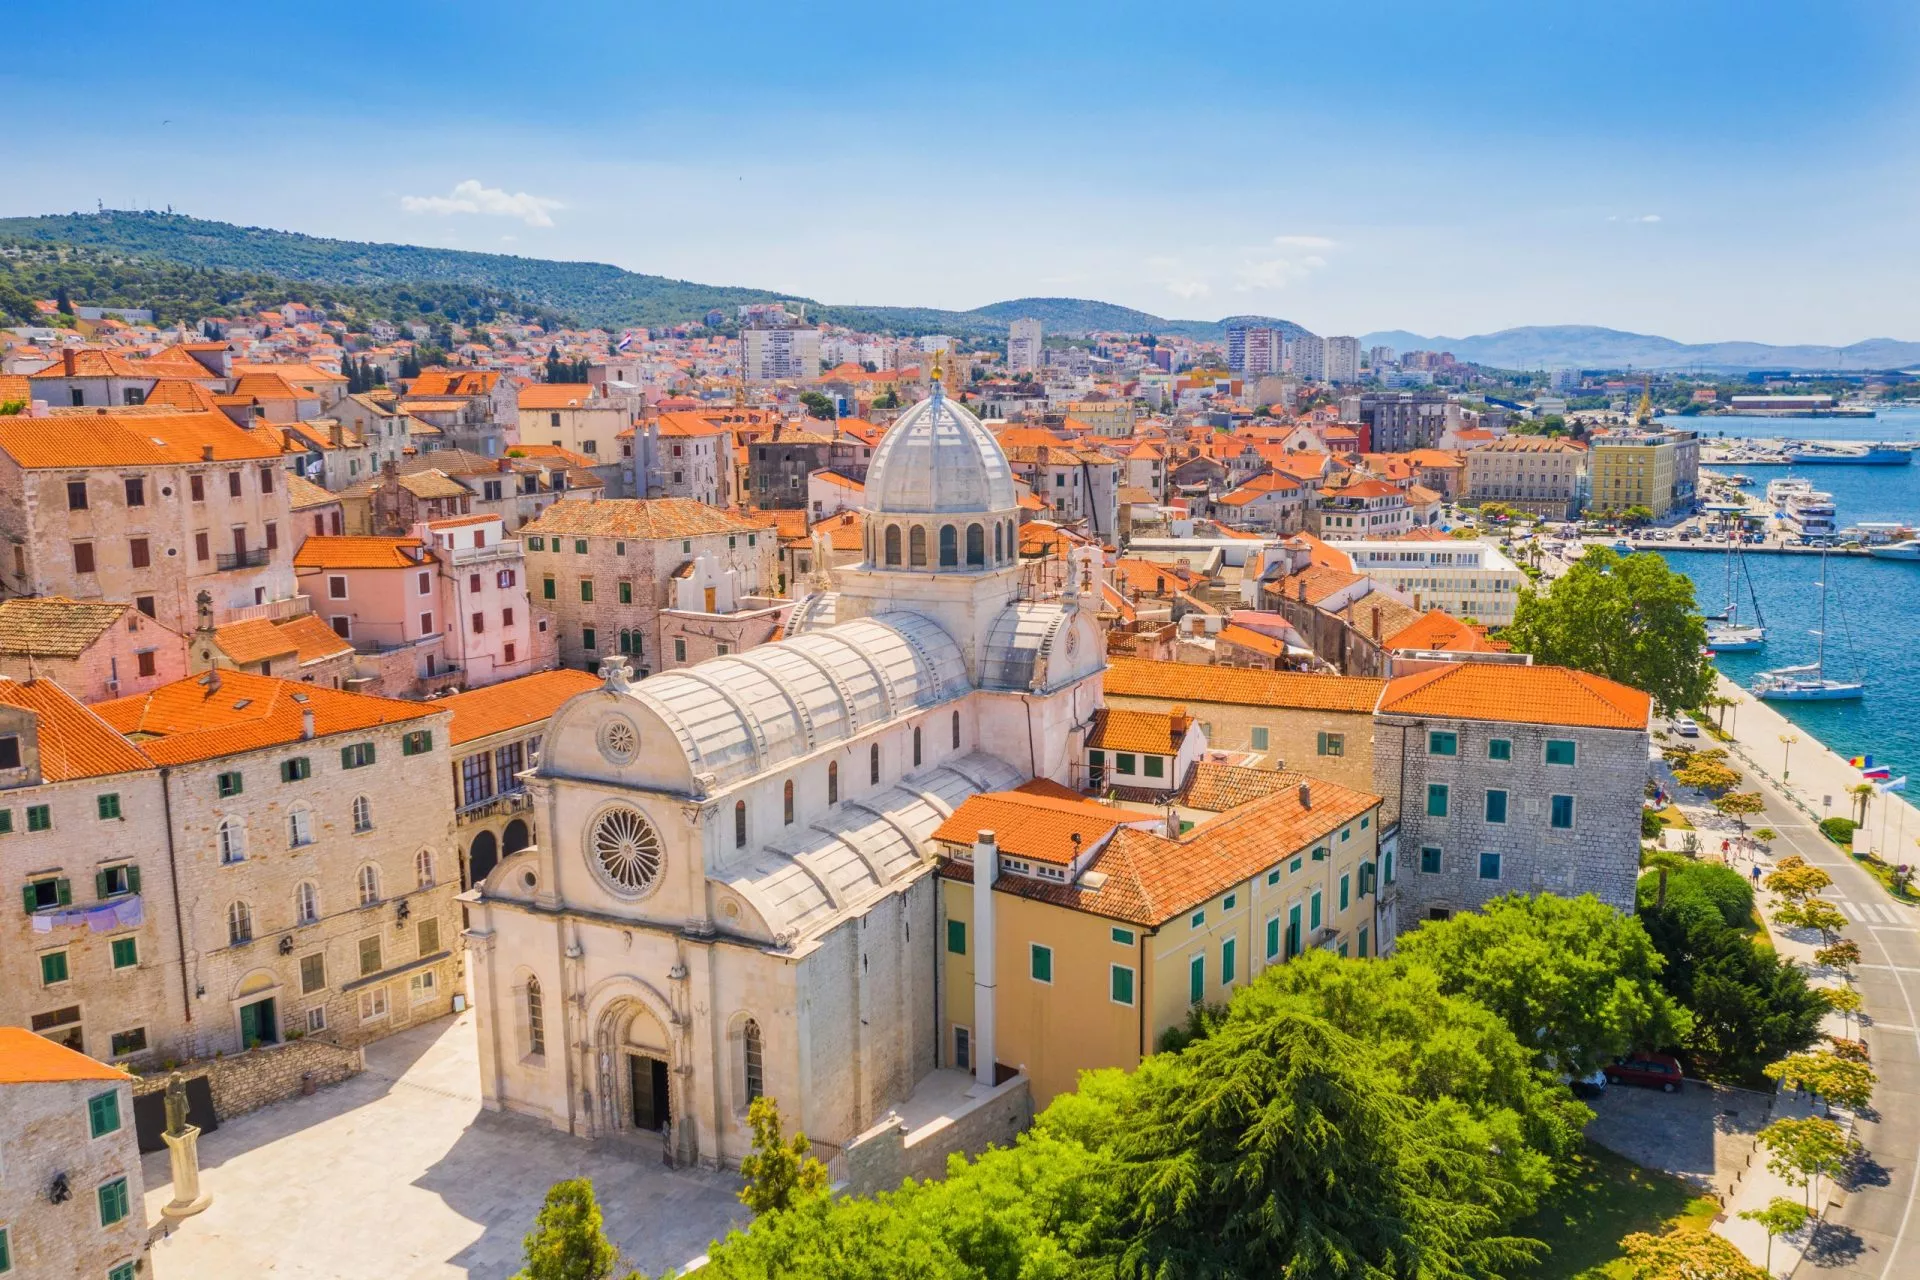 Kroatien, byen Sibenik, panoramaudsigt over den gamle bydel og katedralen St James, det vigtigste arkitektoniske monument fra renæssancetiden i Kroatien, UNESCOs verdensarv.